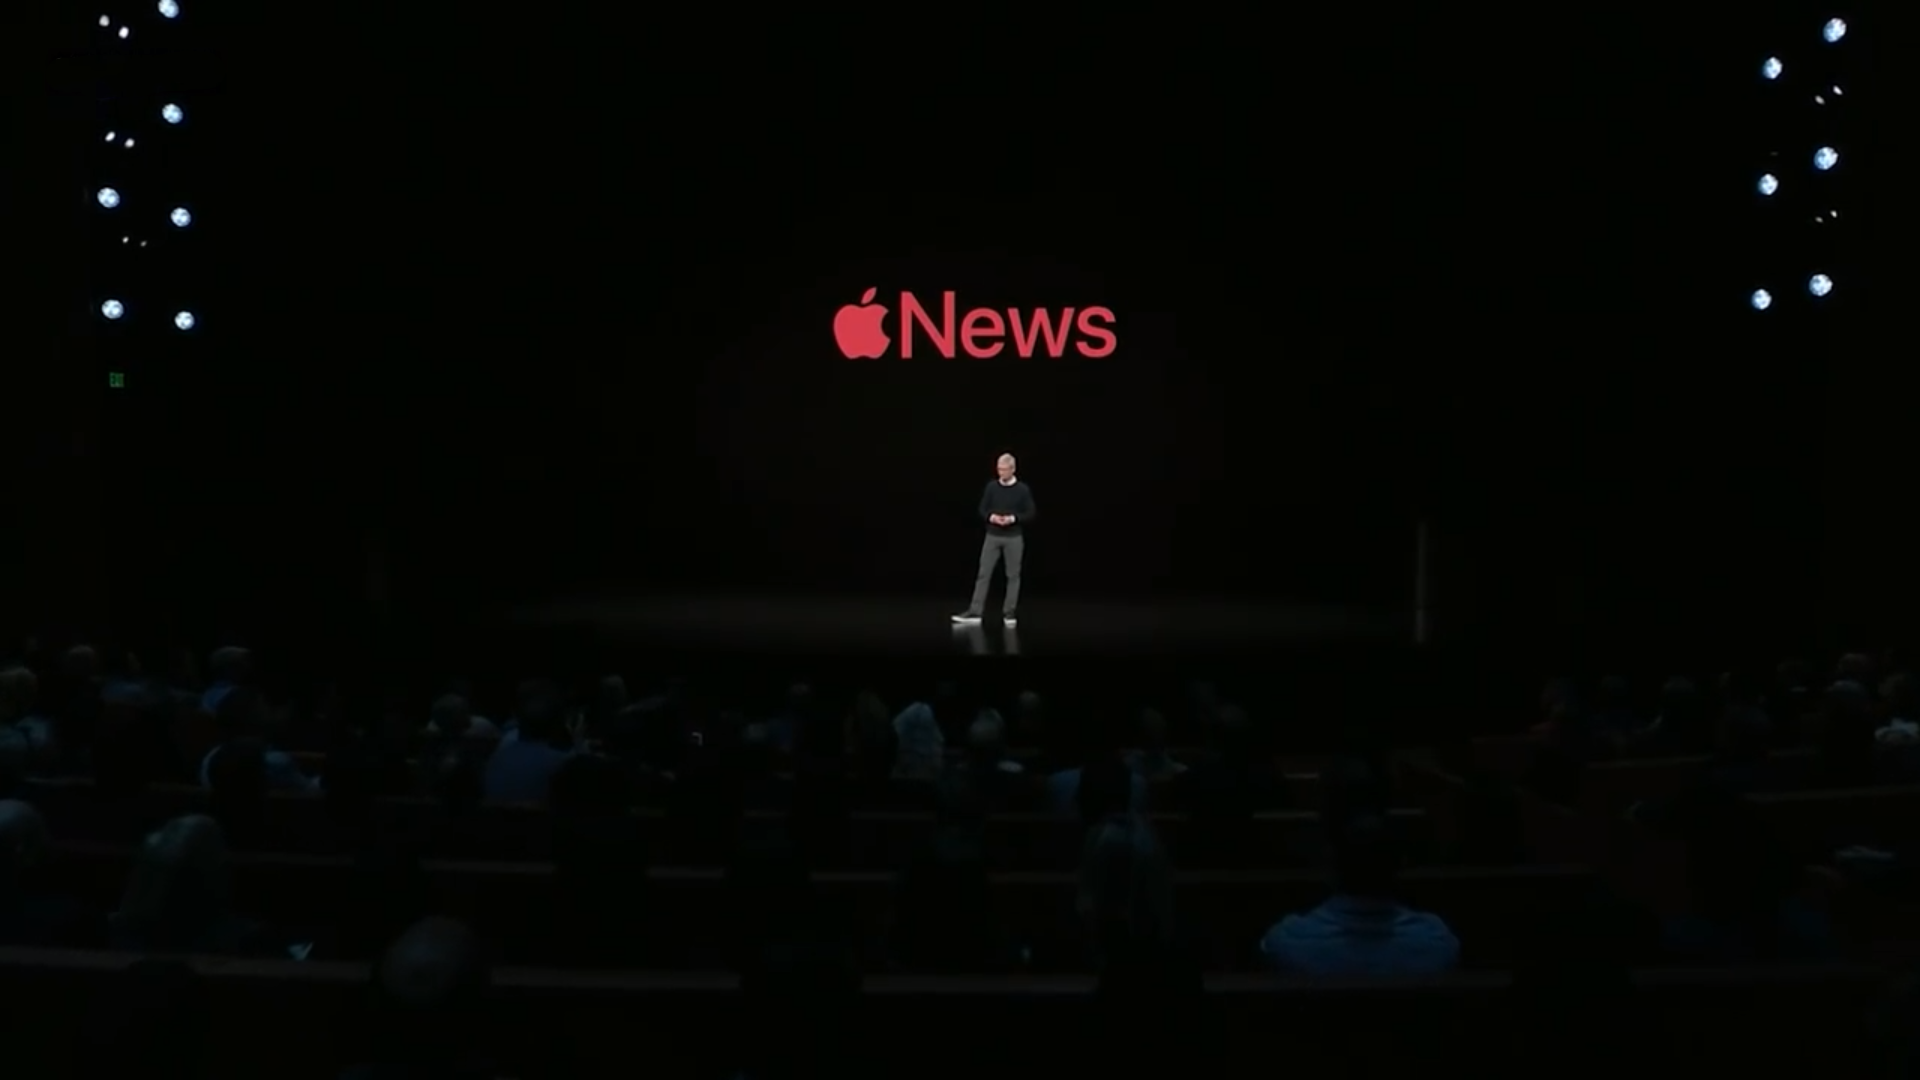 Apple je u svojoj aplikaciji News, preko koje se mogu čitati vijesti, dodao mogućnost kupovanja pretplata na časopise. Apple News Plus, kako zovu svoju nadograđenu uslugu, već sada je dostupan u Americi i Kanadi. Košta 9,99 dolara, a prvi mjesec usluga je besplatna. Aplikacija ima i fora dizajn, u kojem se vijesti iz raznih časopisa slažu u "živu naslovnicu", koja se doima poput dinamične naslovnice pravog papirnatog časopisa.